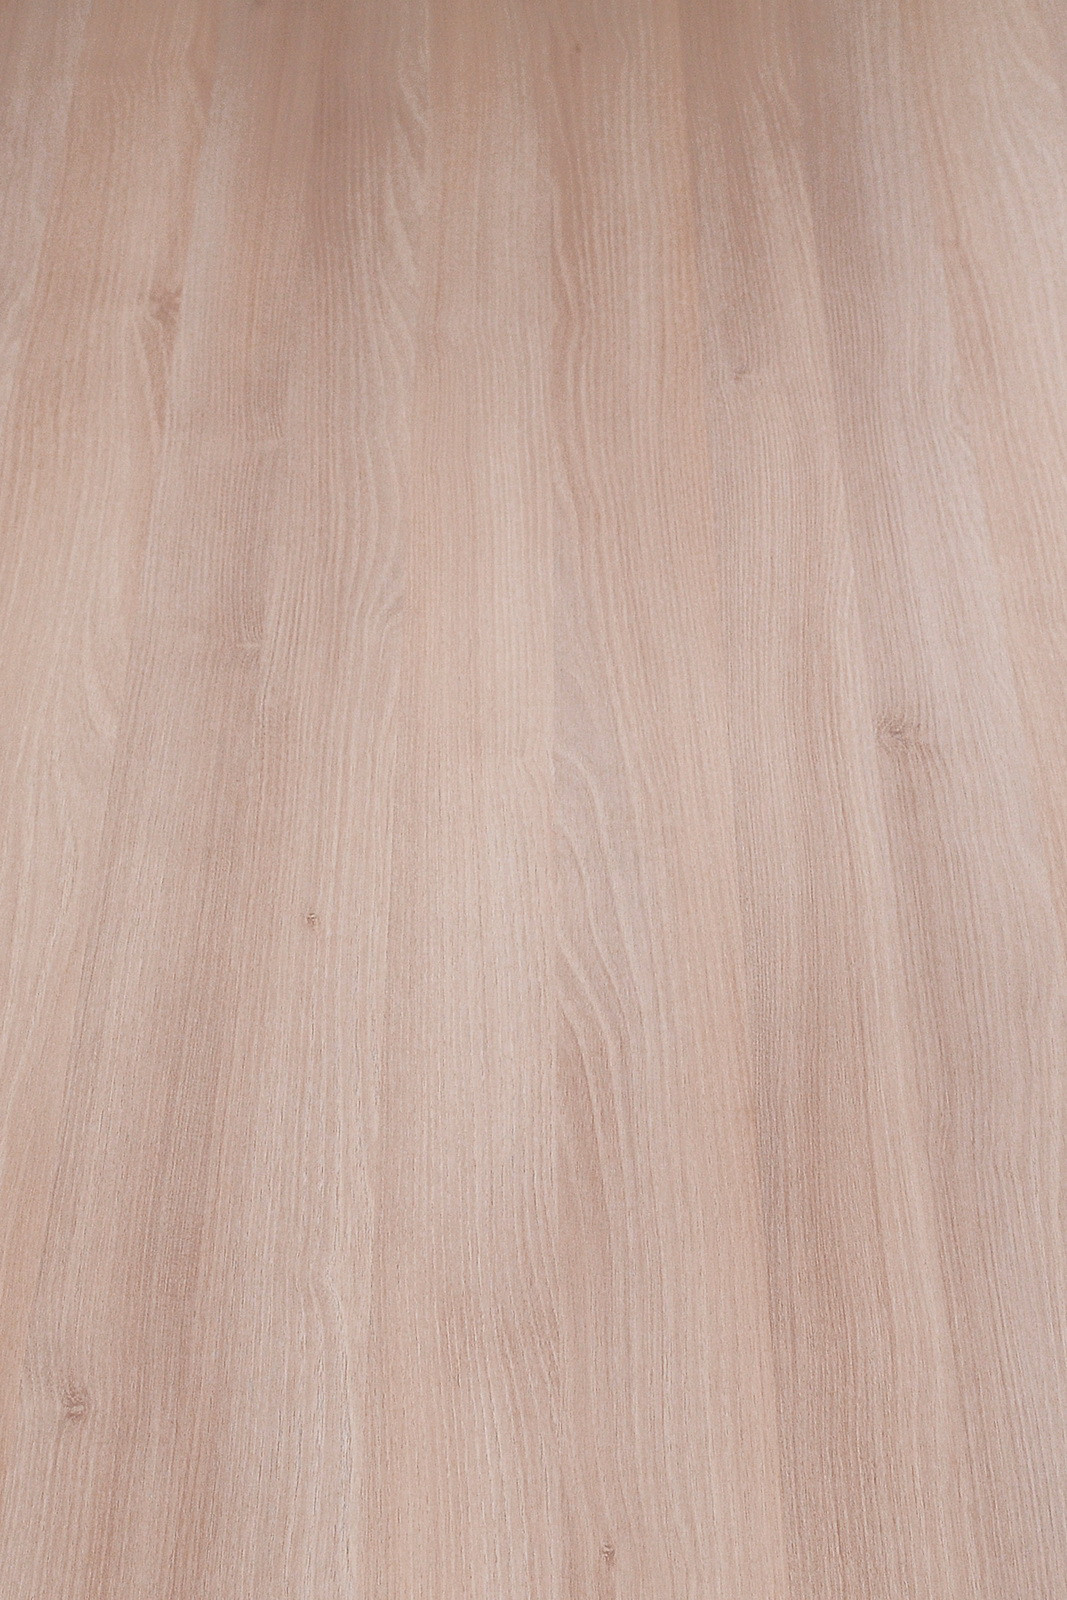 23 Elegant Palm Acacia Hardwood Flooring 2022 free download palm acacia hardwood flooring of decorative laminates sunmica 1 0 mm aica sunmica with classic acacia white wp 104